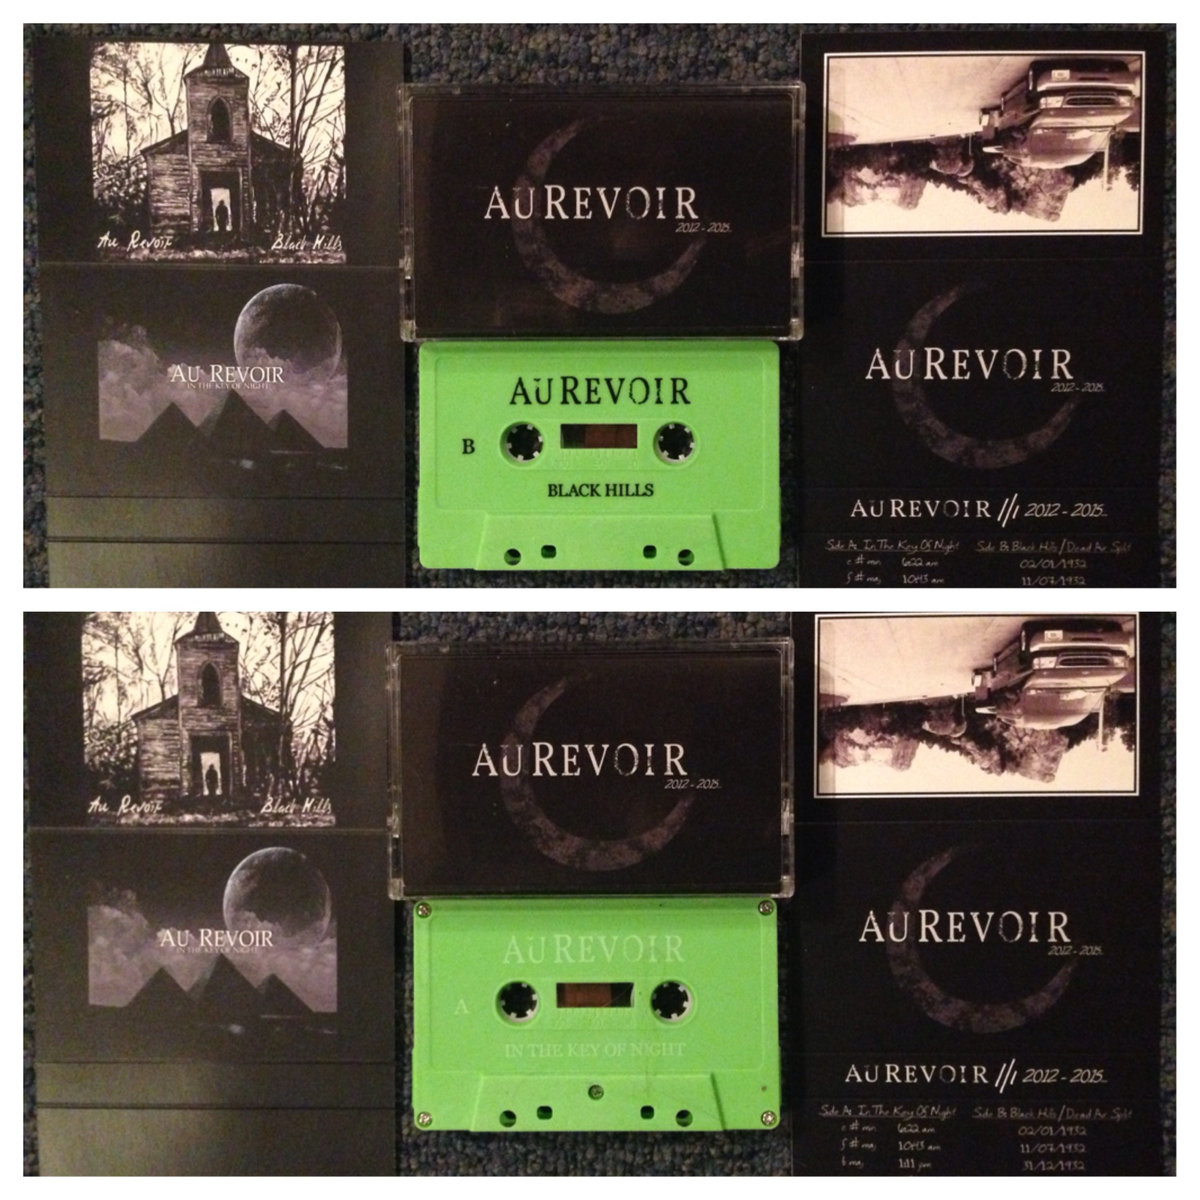 AU REVOIR - 2012 - 2015 Cassette cover 